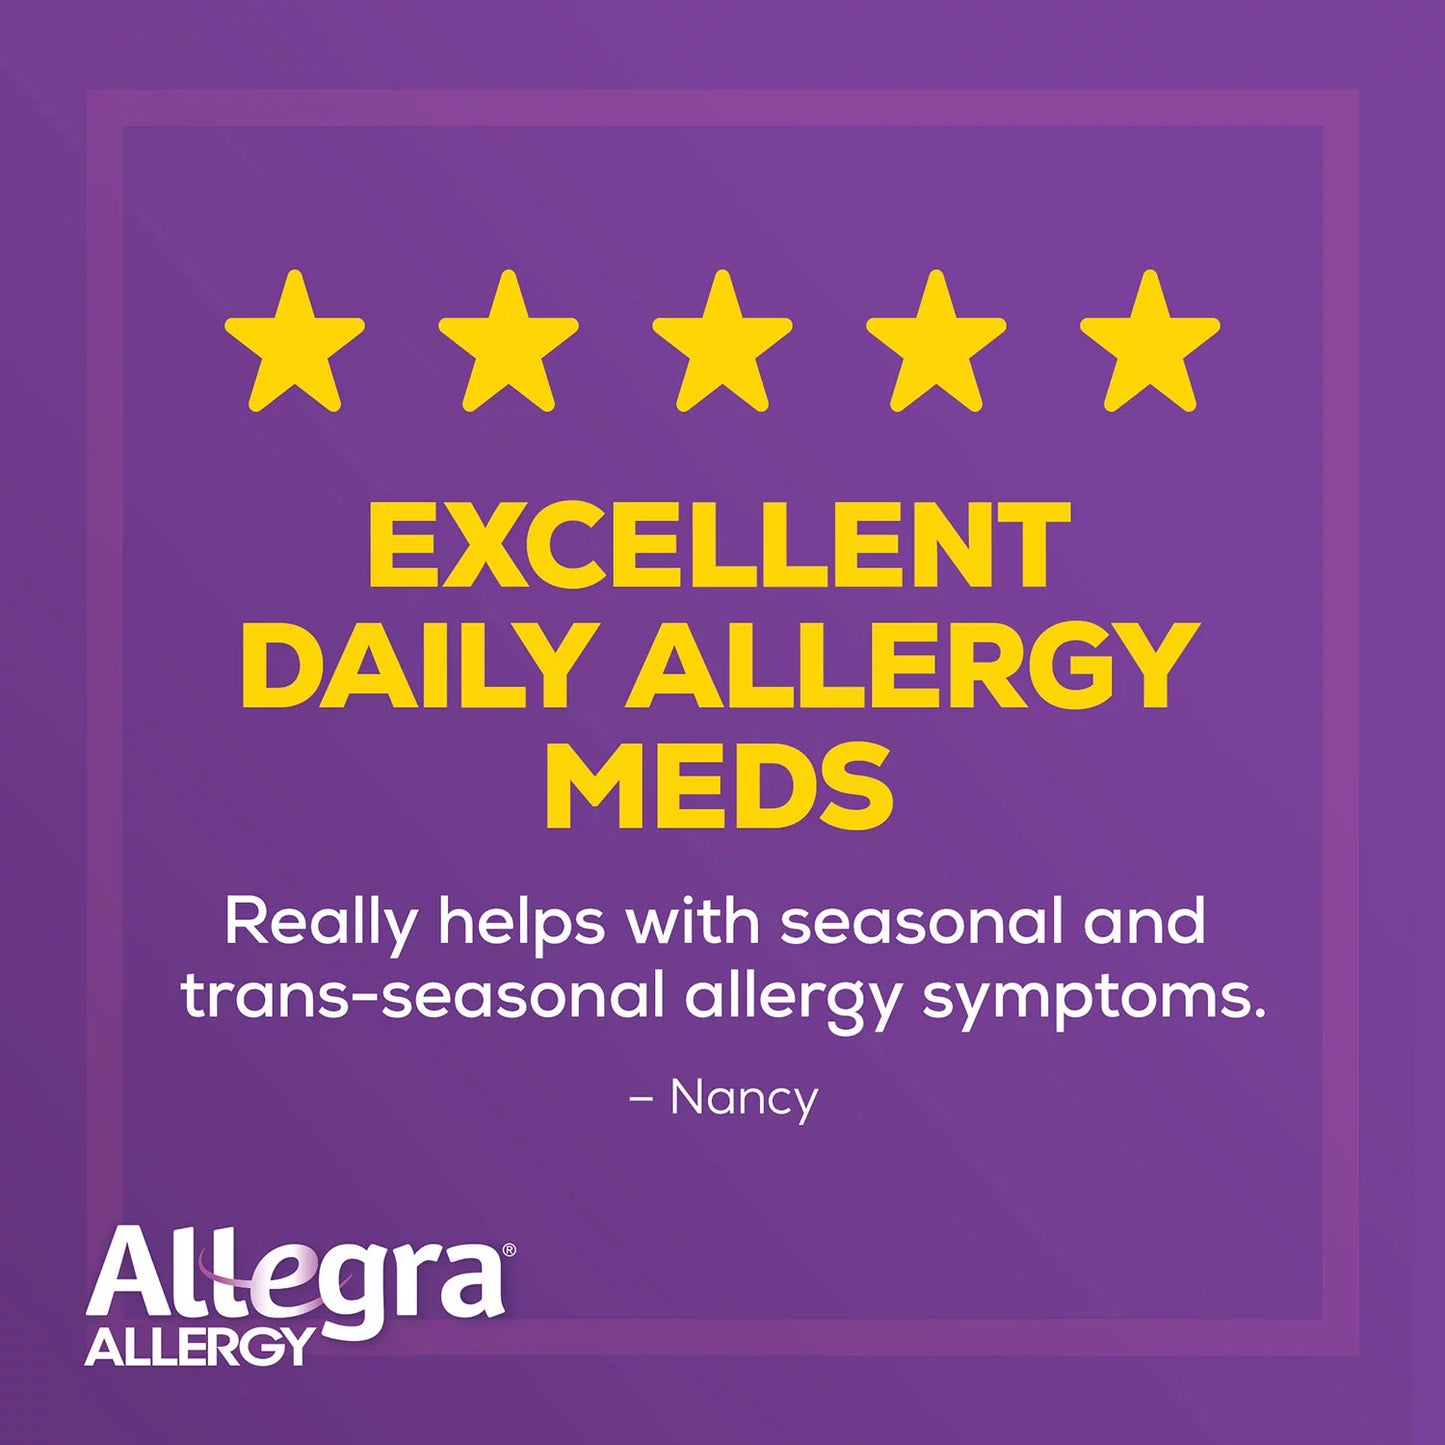 Allegra 24-Hour Indoor/Outdoor Allergy Relief Tablets, 180 mg (110 ct.)